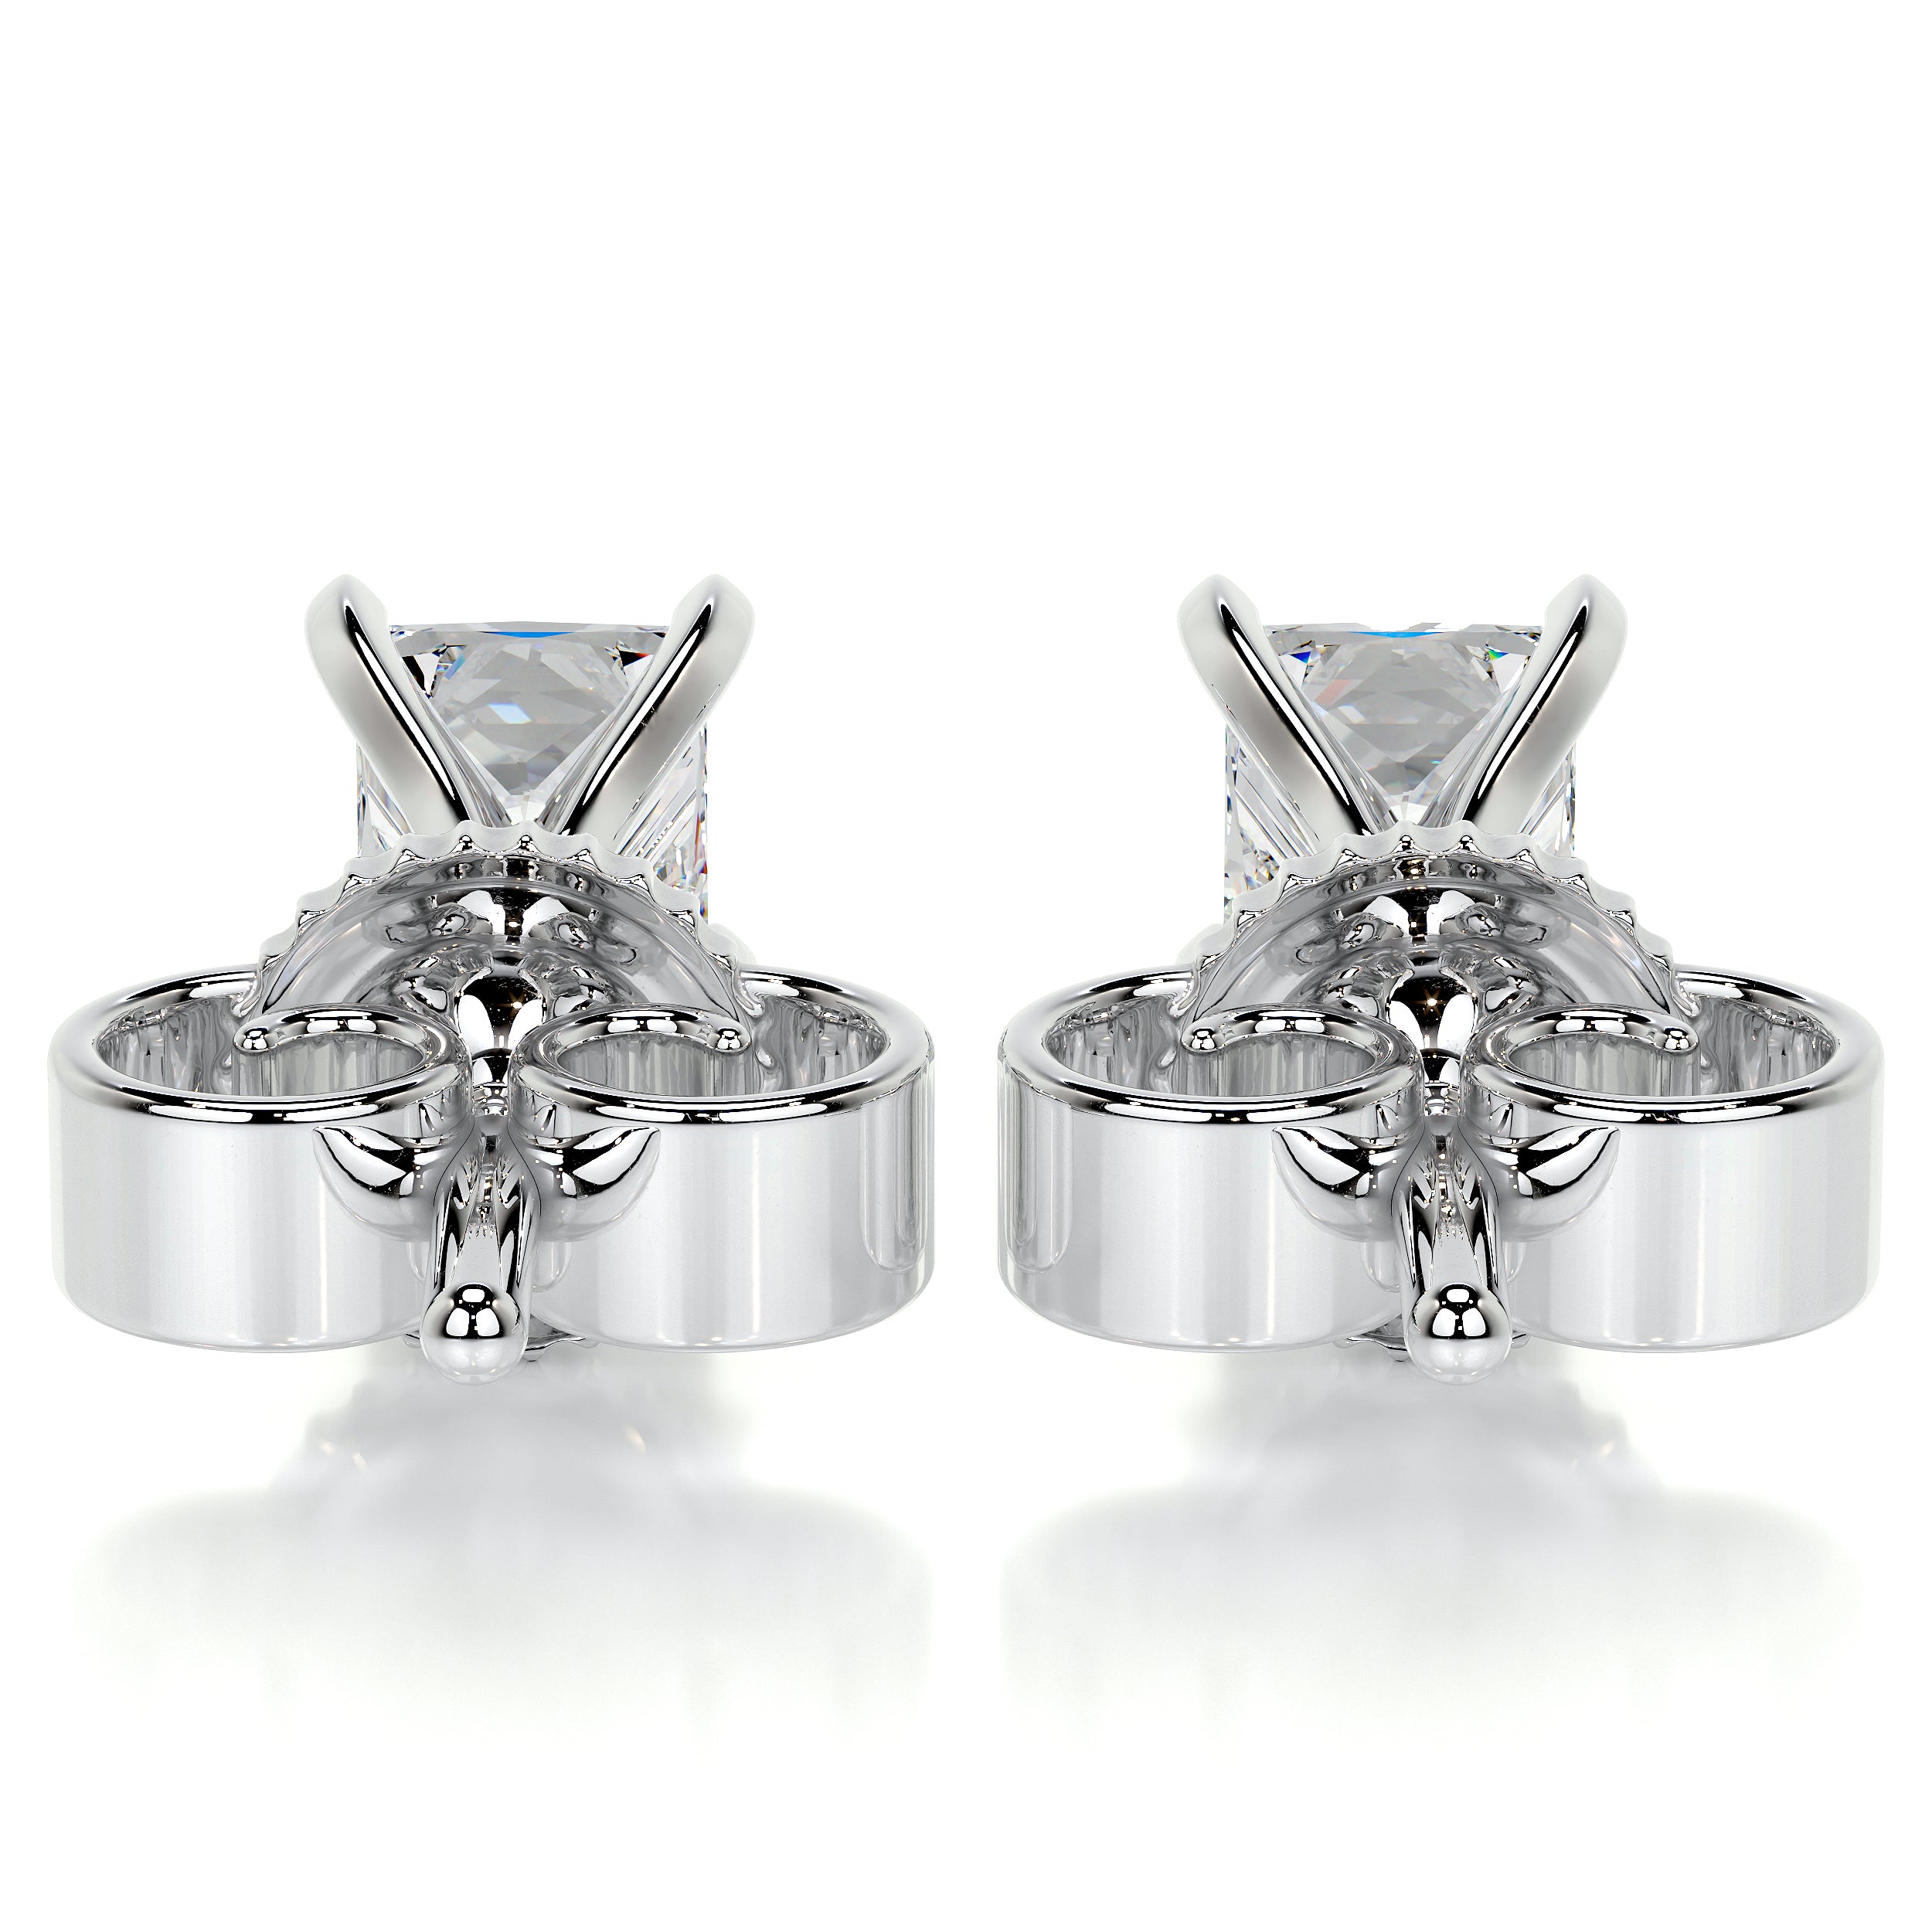 Magnolia Diamond Earrings -18K White Gold